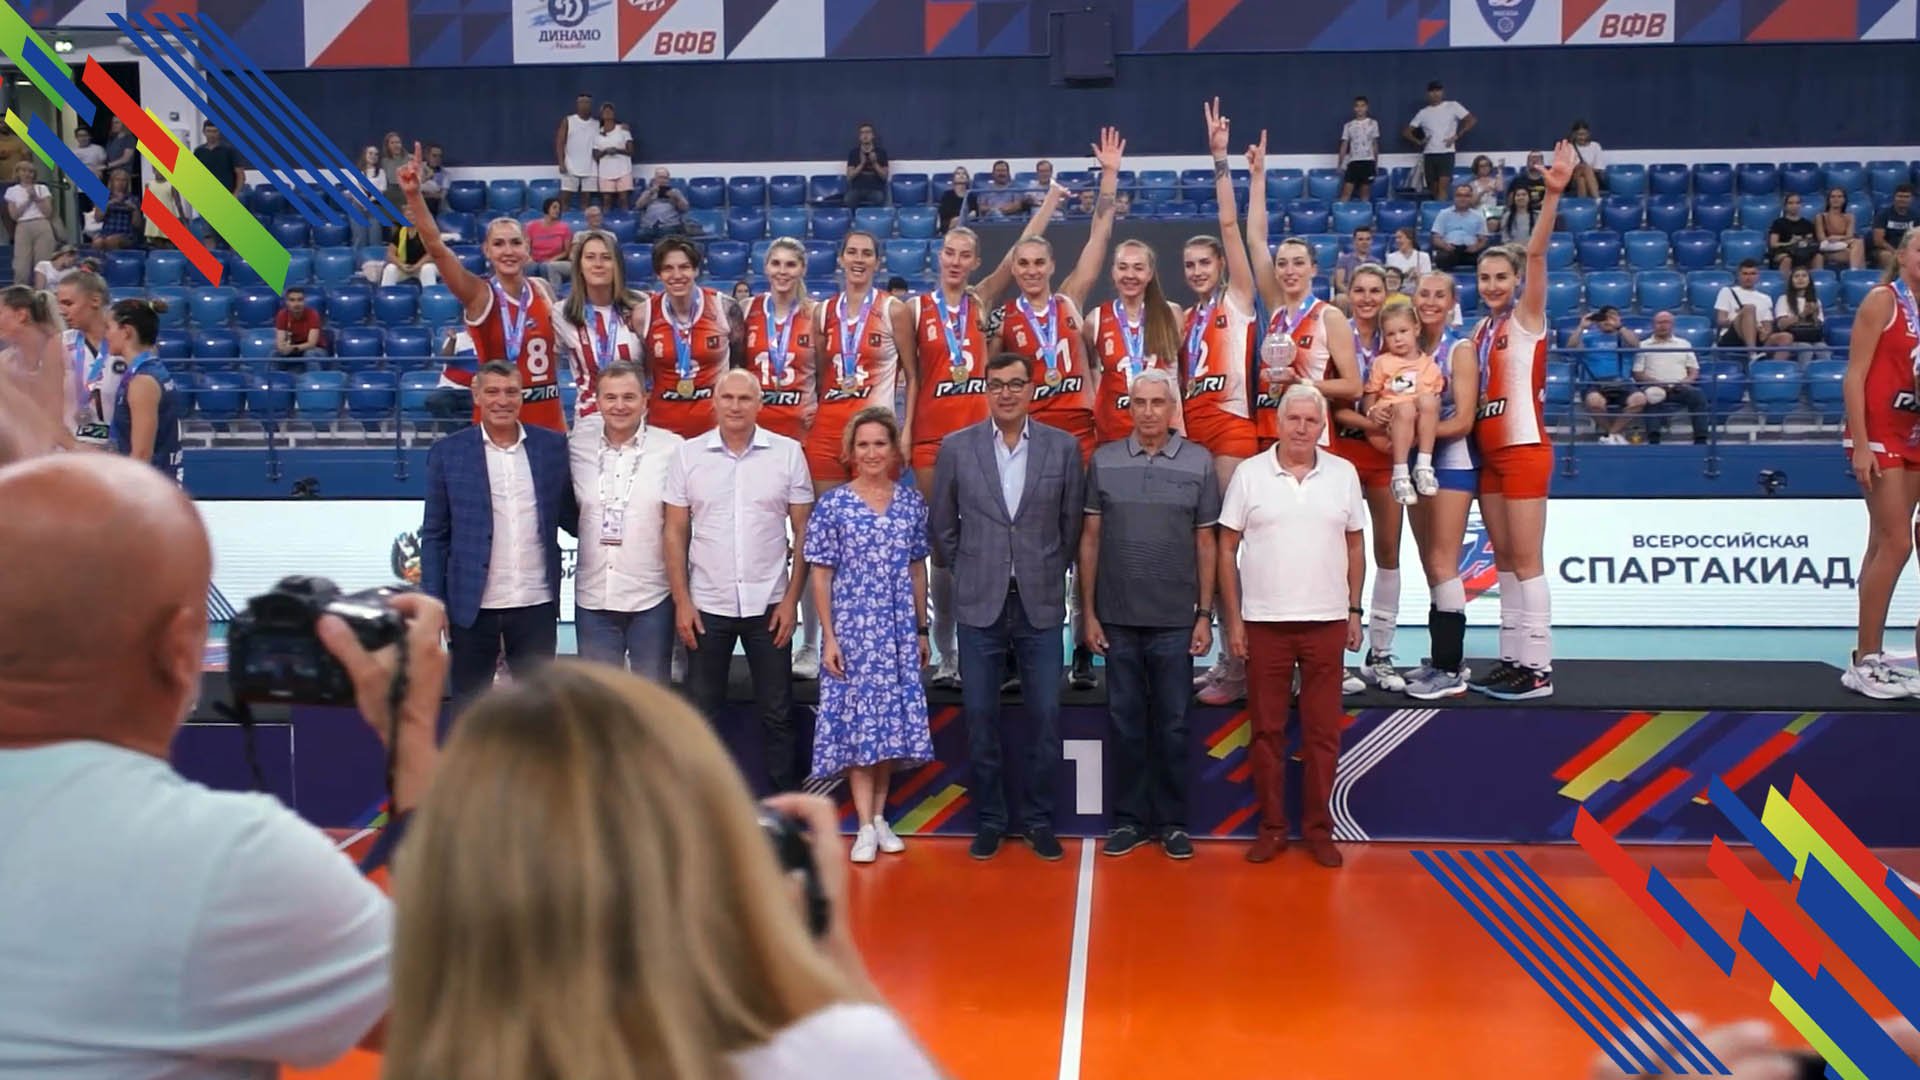 Всероссийская спартакиада 2022. Волейбол (Женщины)